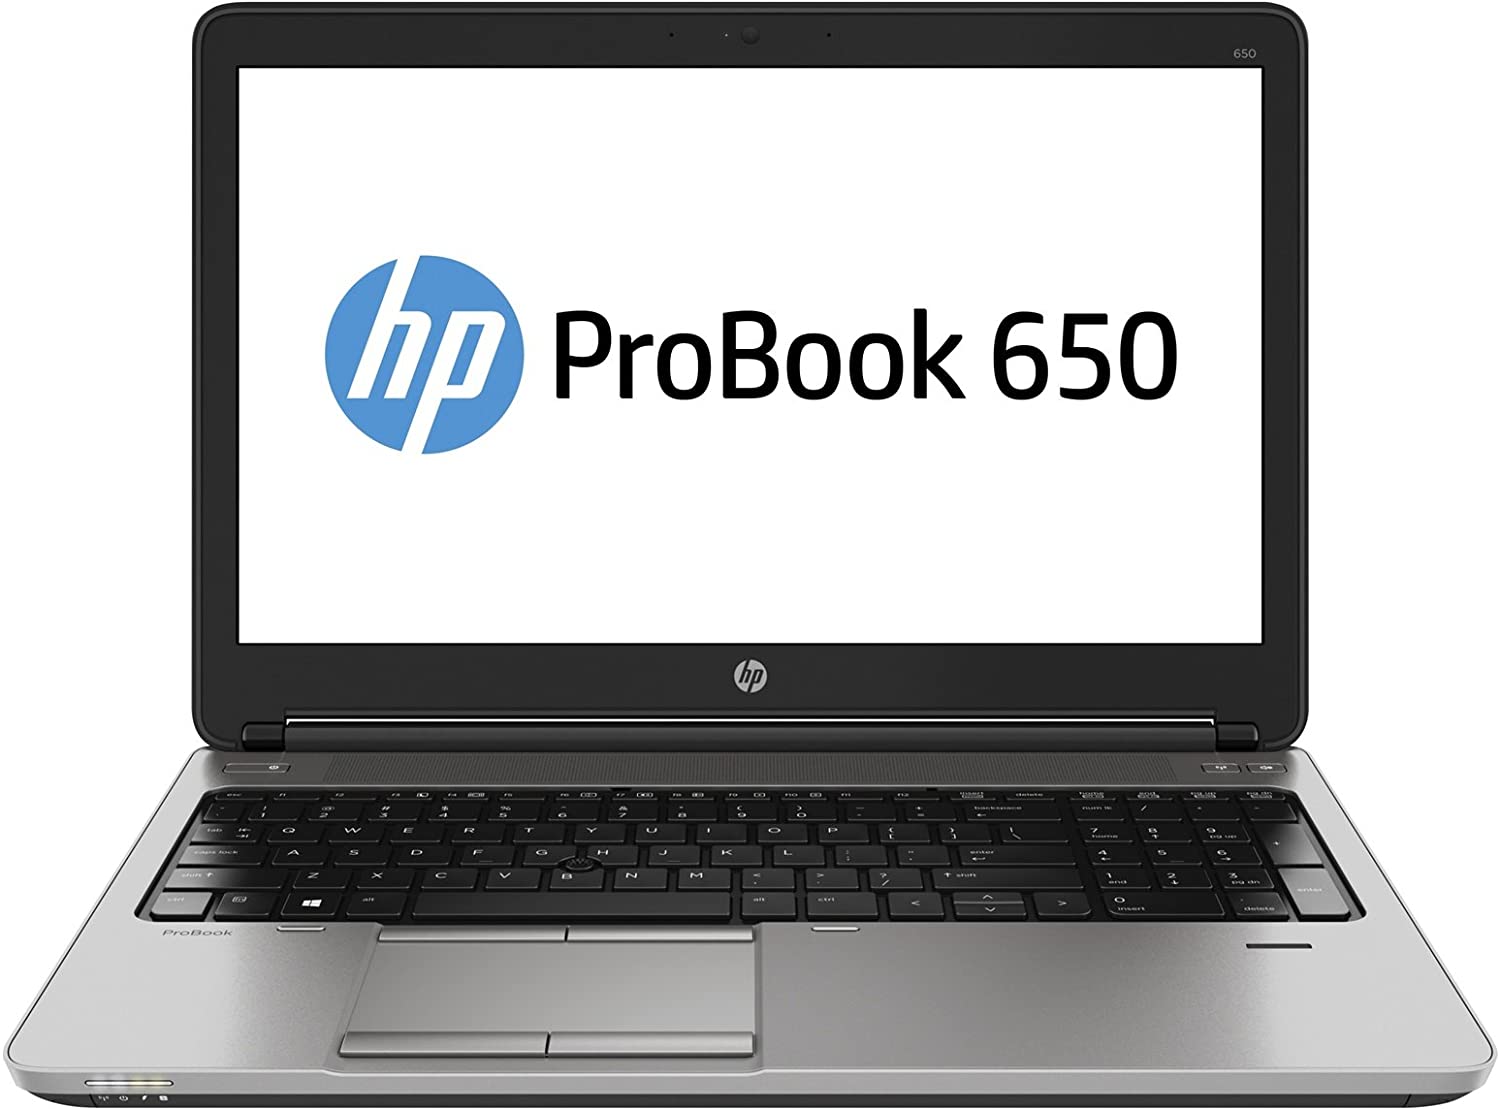 Màn hình HP ProBook 450 G1 size lớn 